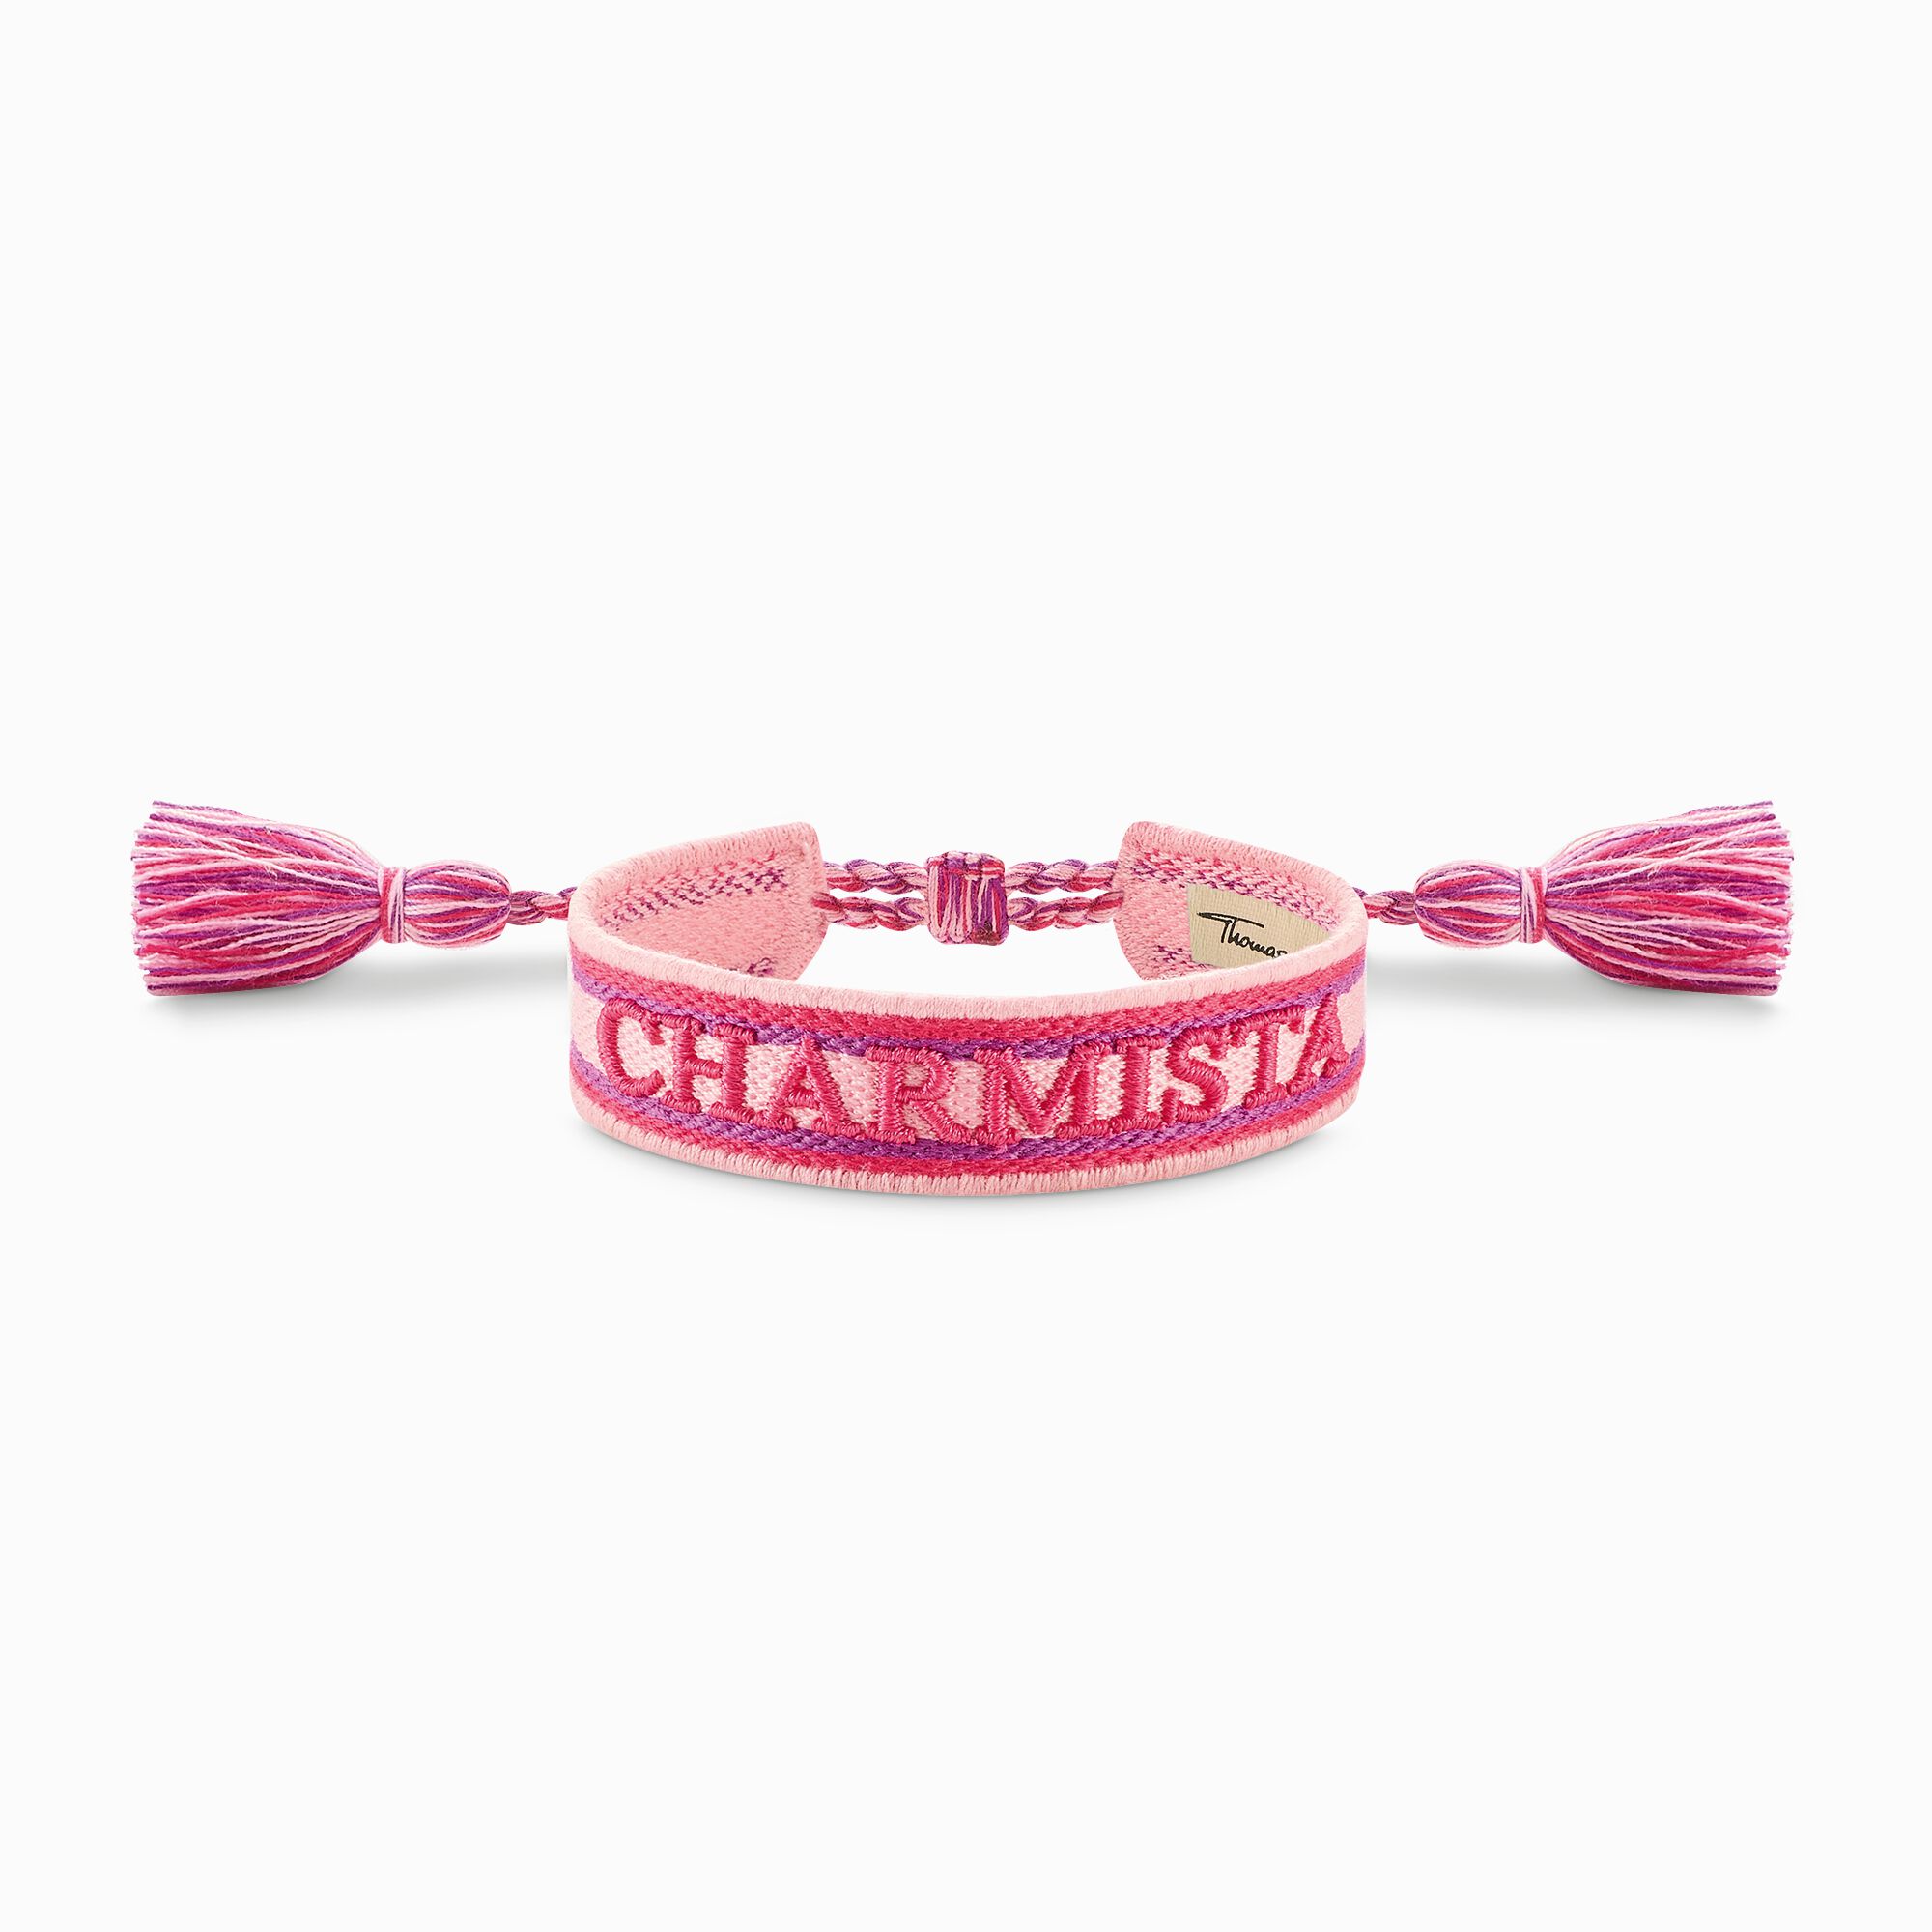 Gewebtes Armband Charmista in Rosa, Pink und Lila aus der Charming Collection Kollektion im Online Shop von THOMAS SABO